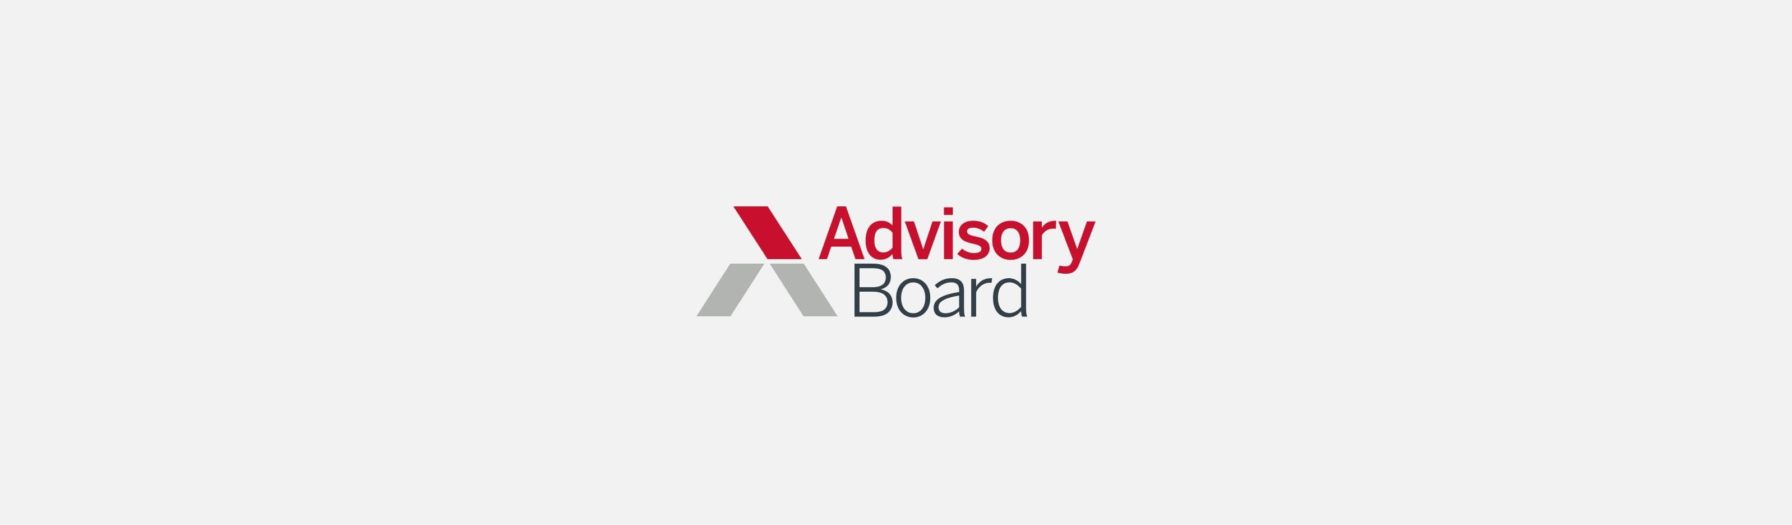  Advisory Board logo